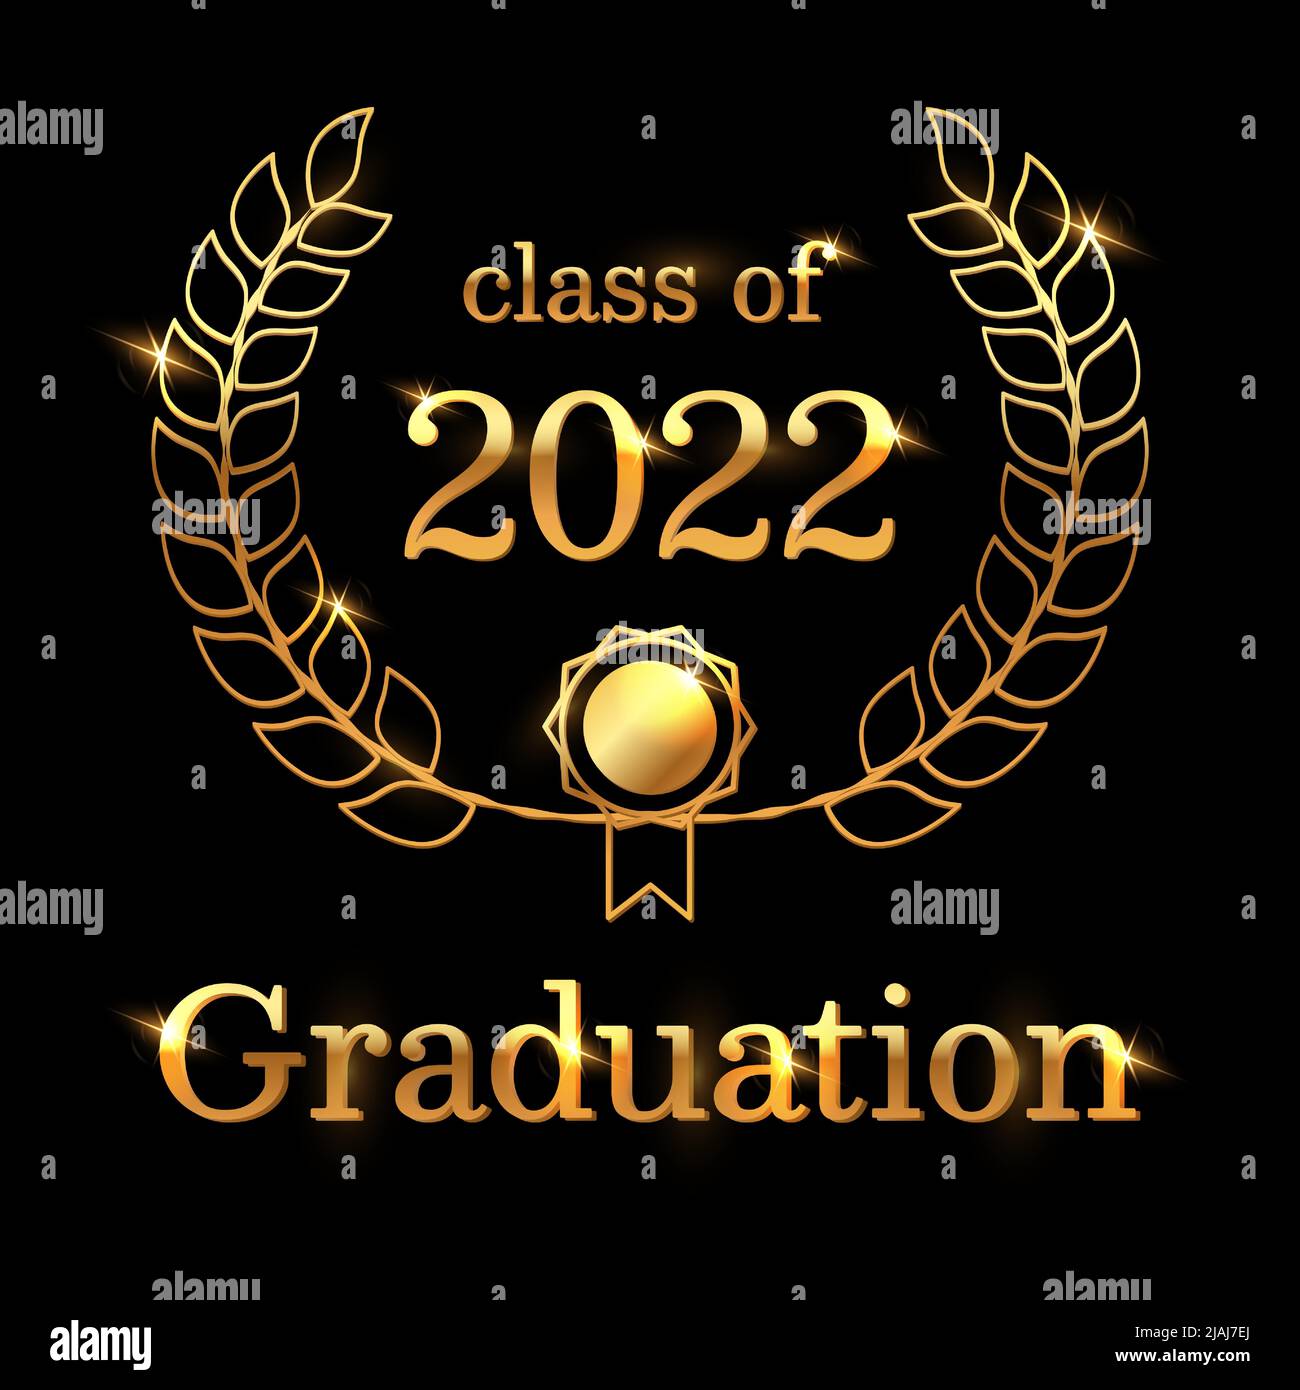 Elegante classe di 2022 graduazioni con poster. Nero e oro. Modello vettoriale lucido per inviti a feste di laurea, graduazioni o biglietti di auguri. Illustrazione Vettoriale